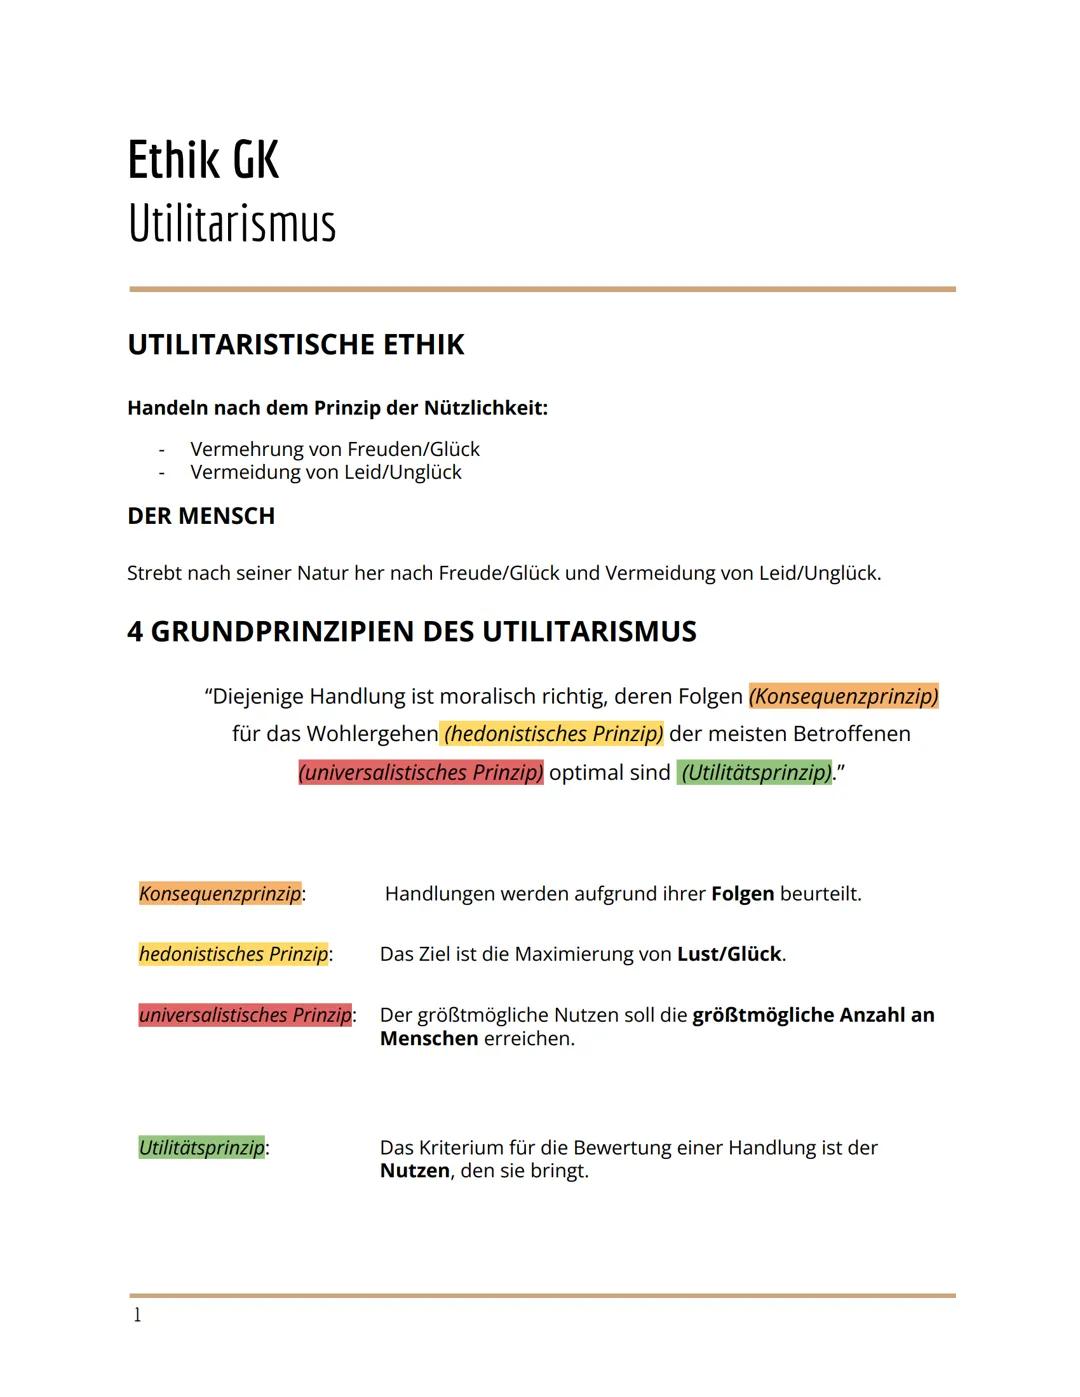 
<h2 id="utilitarismus">Utilitarismus</h2>
<p>Die utilitaristische Ethik basiert auf dem Prinzip der Nützlichkeit, welches die Vermehrung vo